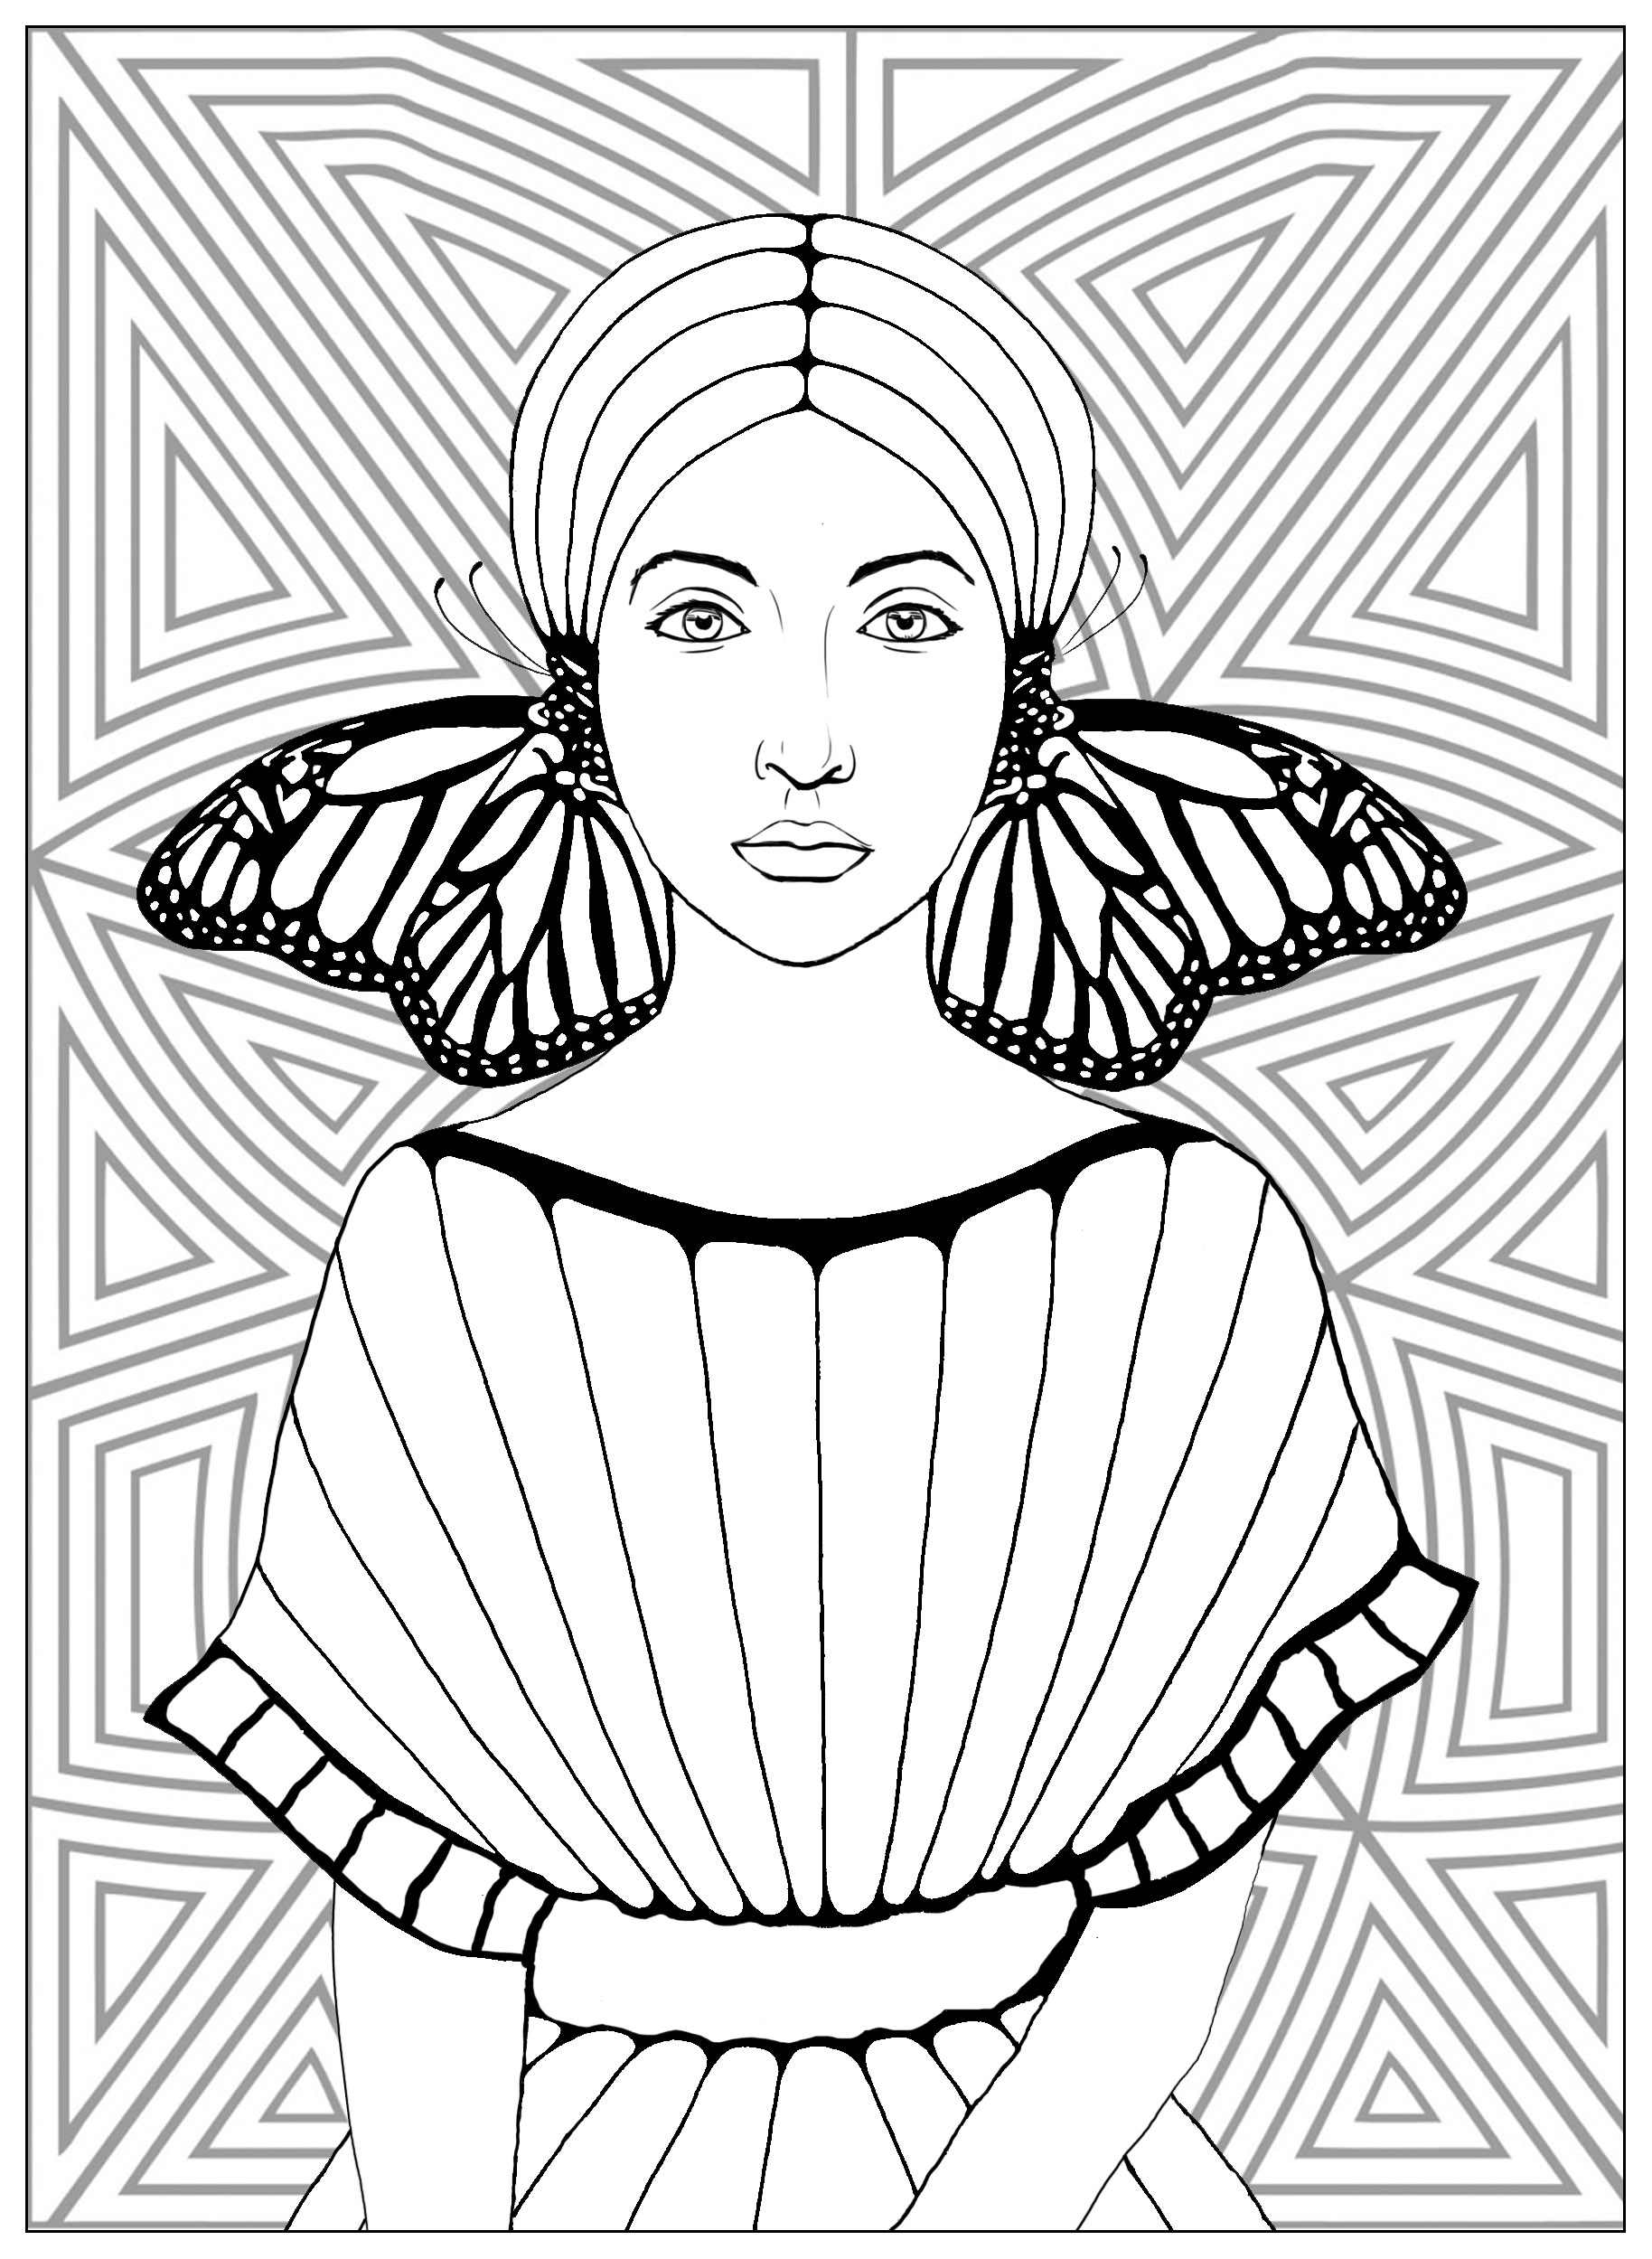 Mulher com asas de borboleta num brinco e um belo fundo com padrões geométricos